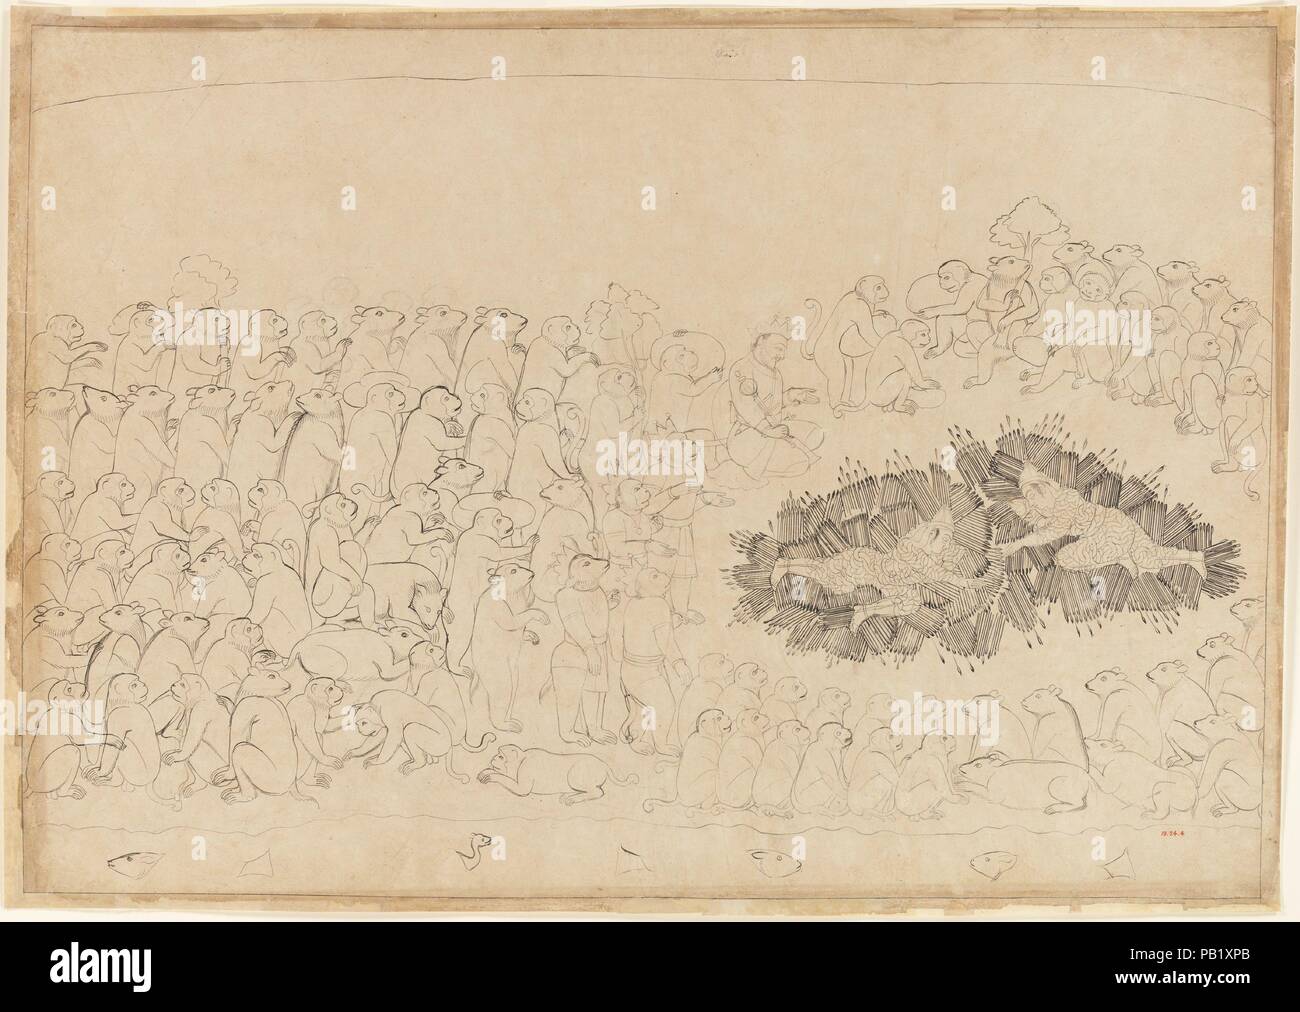 Rama e Lakshmana sopraffatti dalle frecce: Folio da un Ramayana 'Siege di Lanka' serie. Artista: attribuito a Manaku (active ca. 1725-60). Cultura: India (Guler, Himachal Pradesh). Dimensioni: pagina: 23 1/2 x 33 in. (59,7 x 83,8 cm) immagine: 22 3/8 x 31 1/2 in. (56,8 x 80 cm). Data: ca. 1725. 'Il rendering di se stesso invisibile in virtù della manna che egli ha ricevuto dal Brahma, [Indrajit, figlio di Ravana] . . . Allentato frecce appuntite luminose come alleggerimento su Rama e Lakshmana . . . [In modo] non un capello di respiro sui loro corpi non era lacerata, punga e forato da queste irresistibile freccette.' Il Ramayana Foto Stock